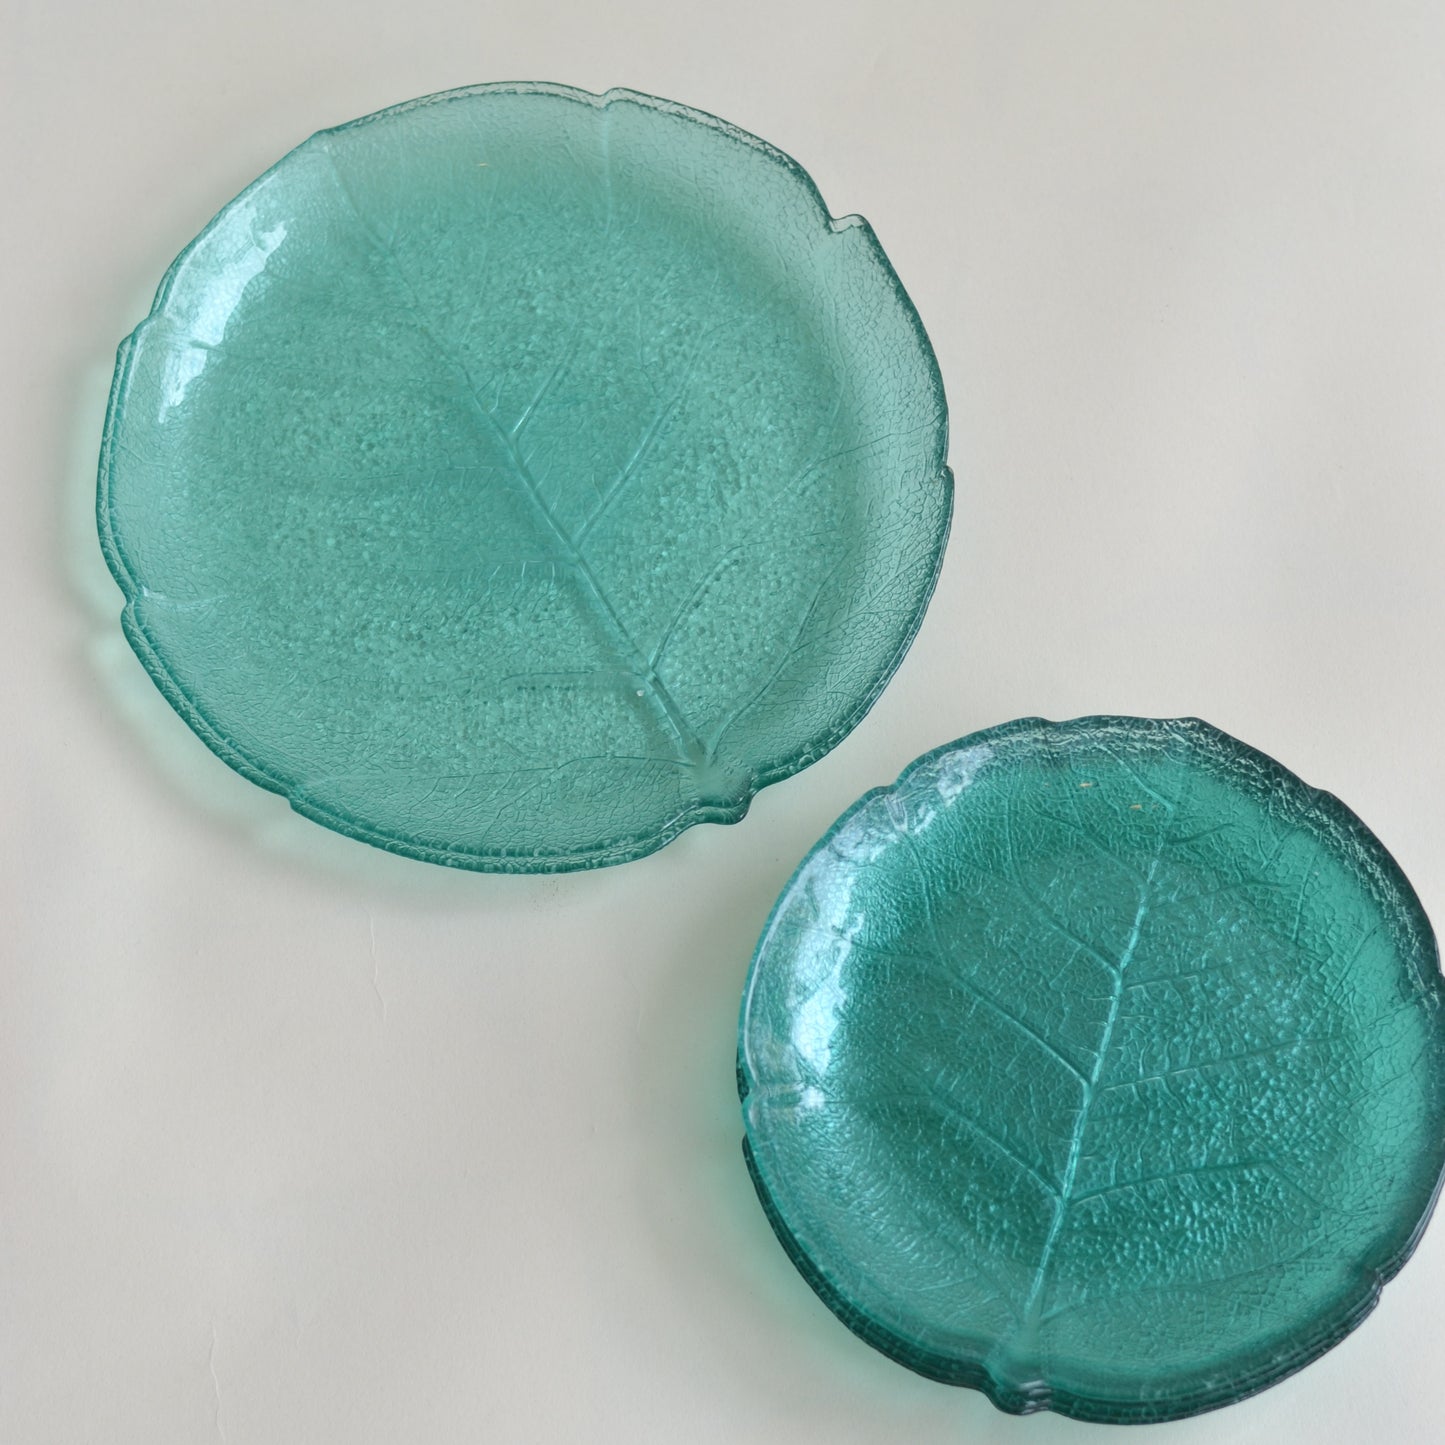 Glass Teal Plates with Subtle Leaf Design, Set of 8